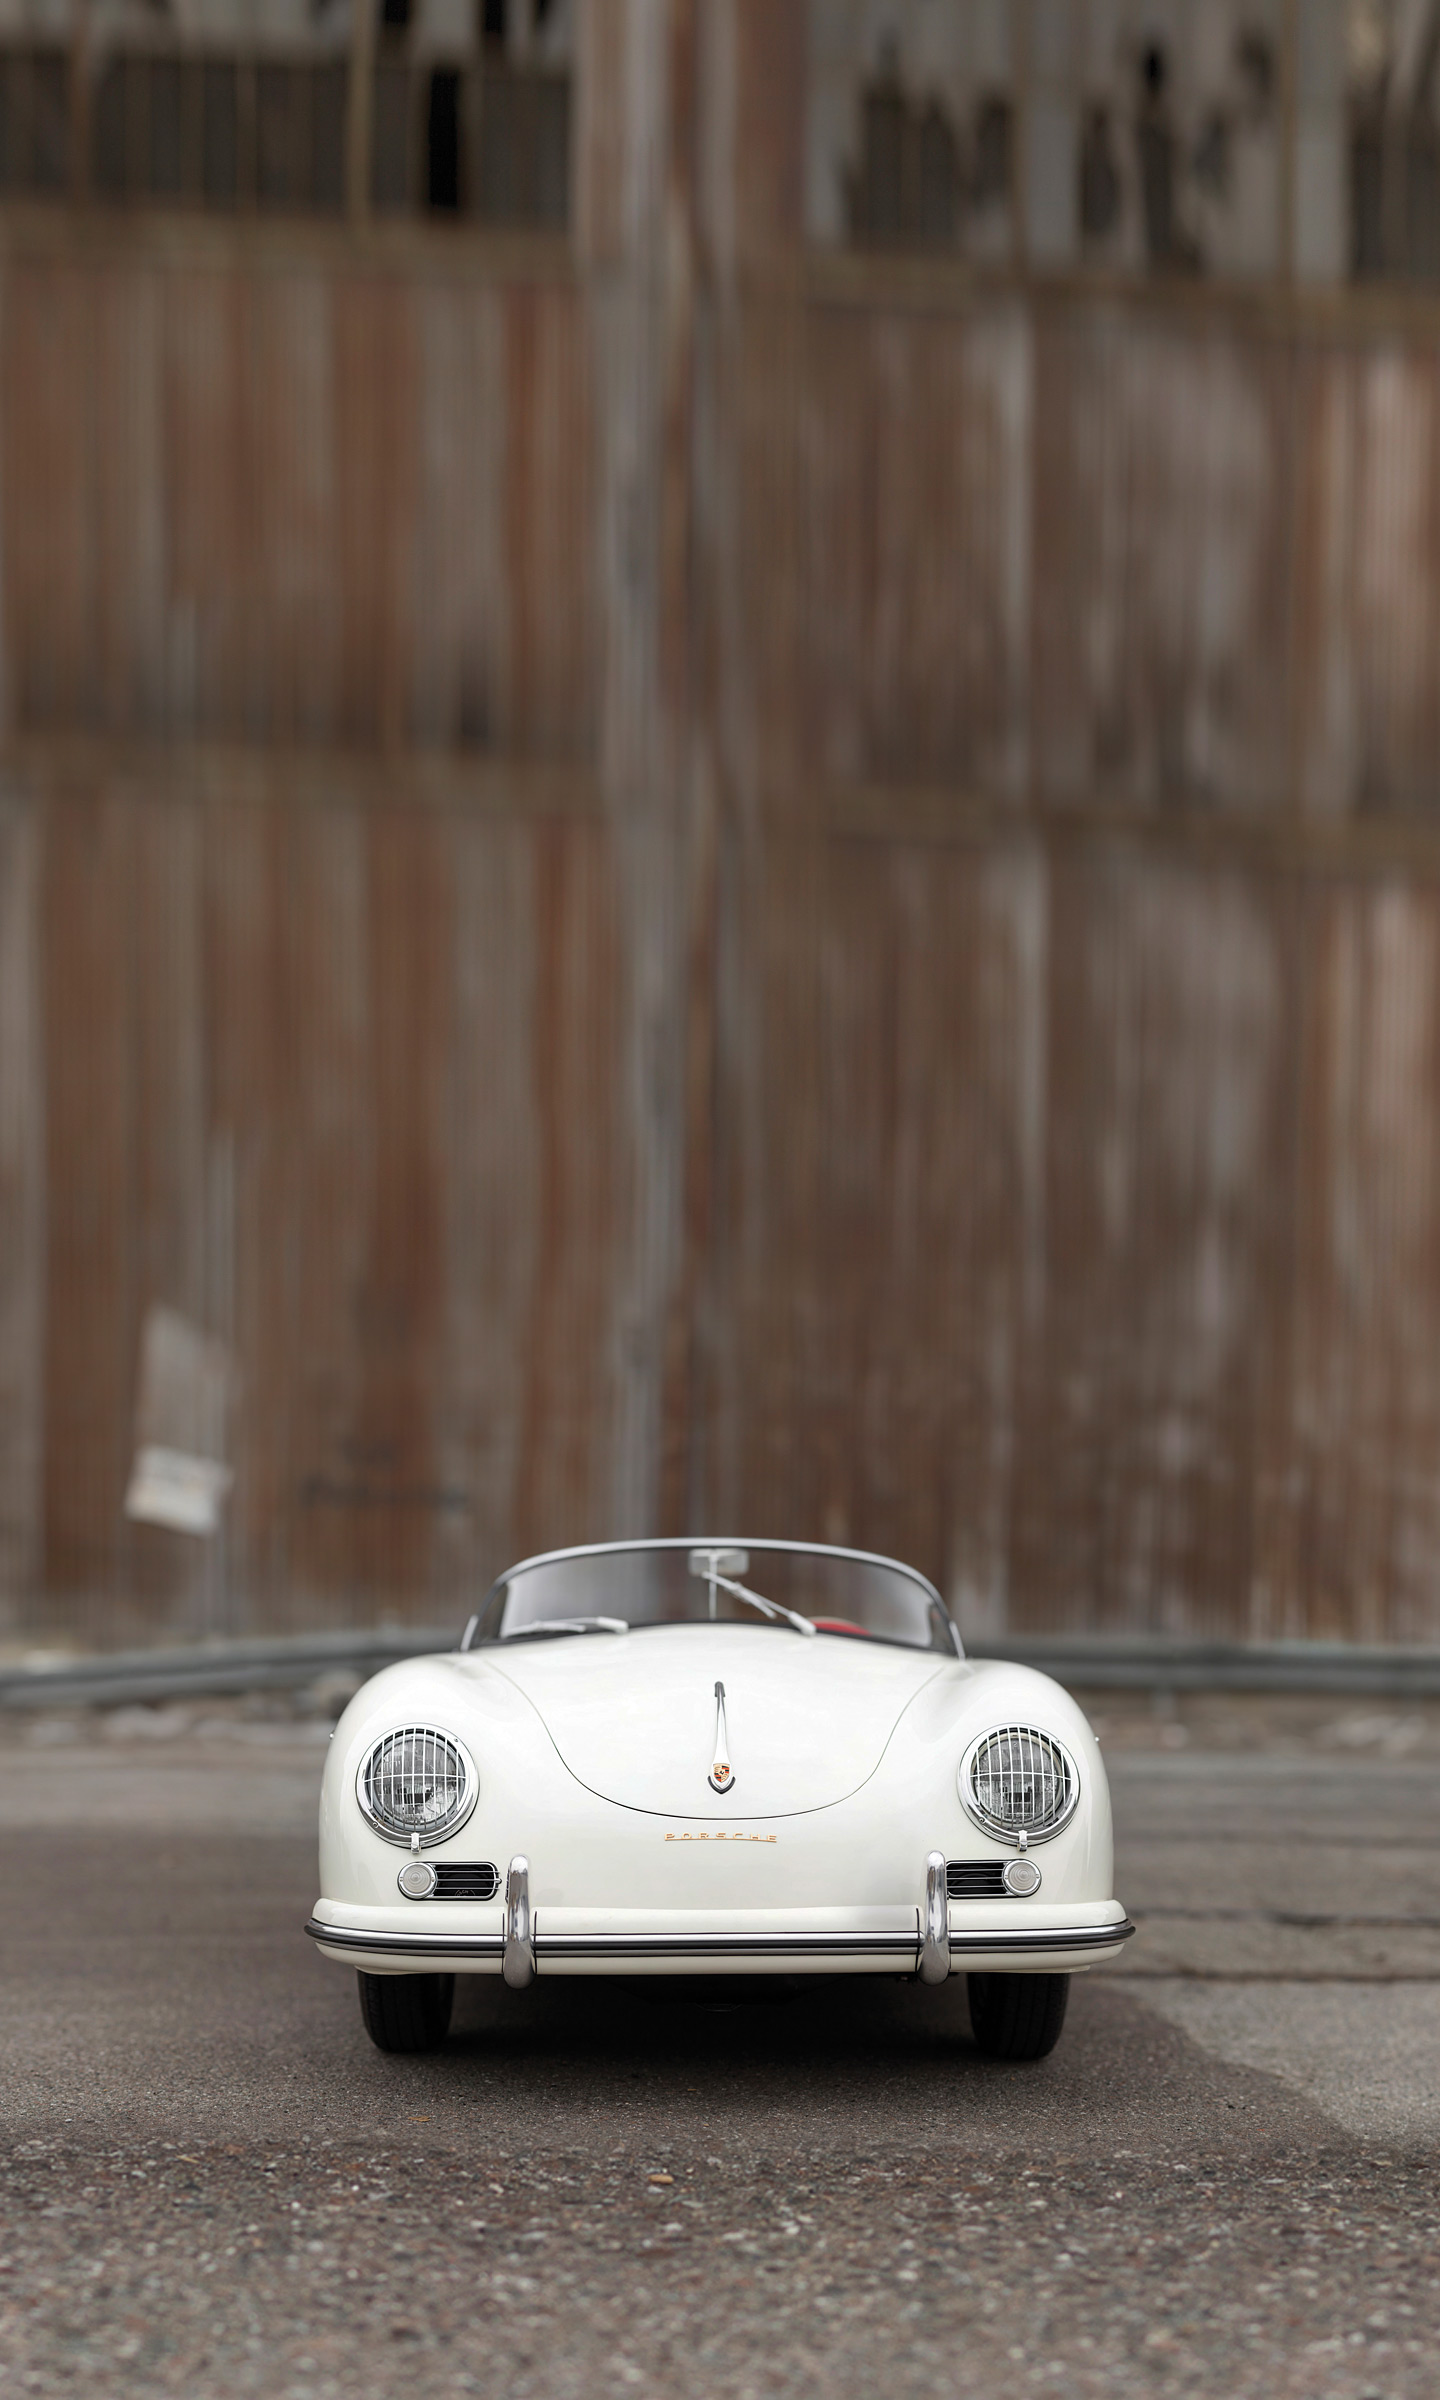  1955 Porsche 356 Speedster Wallpaper.